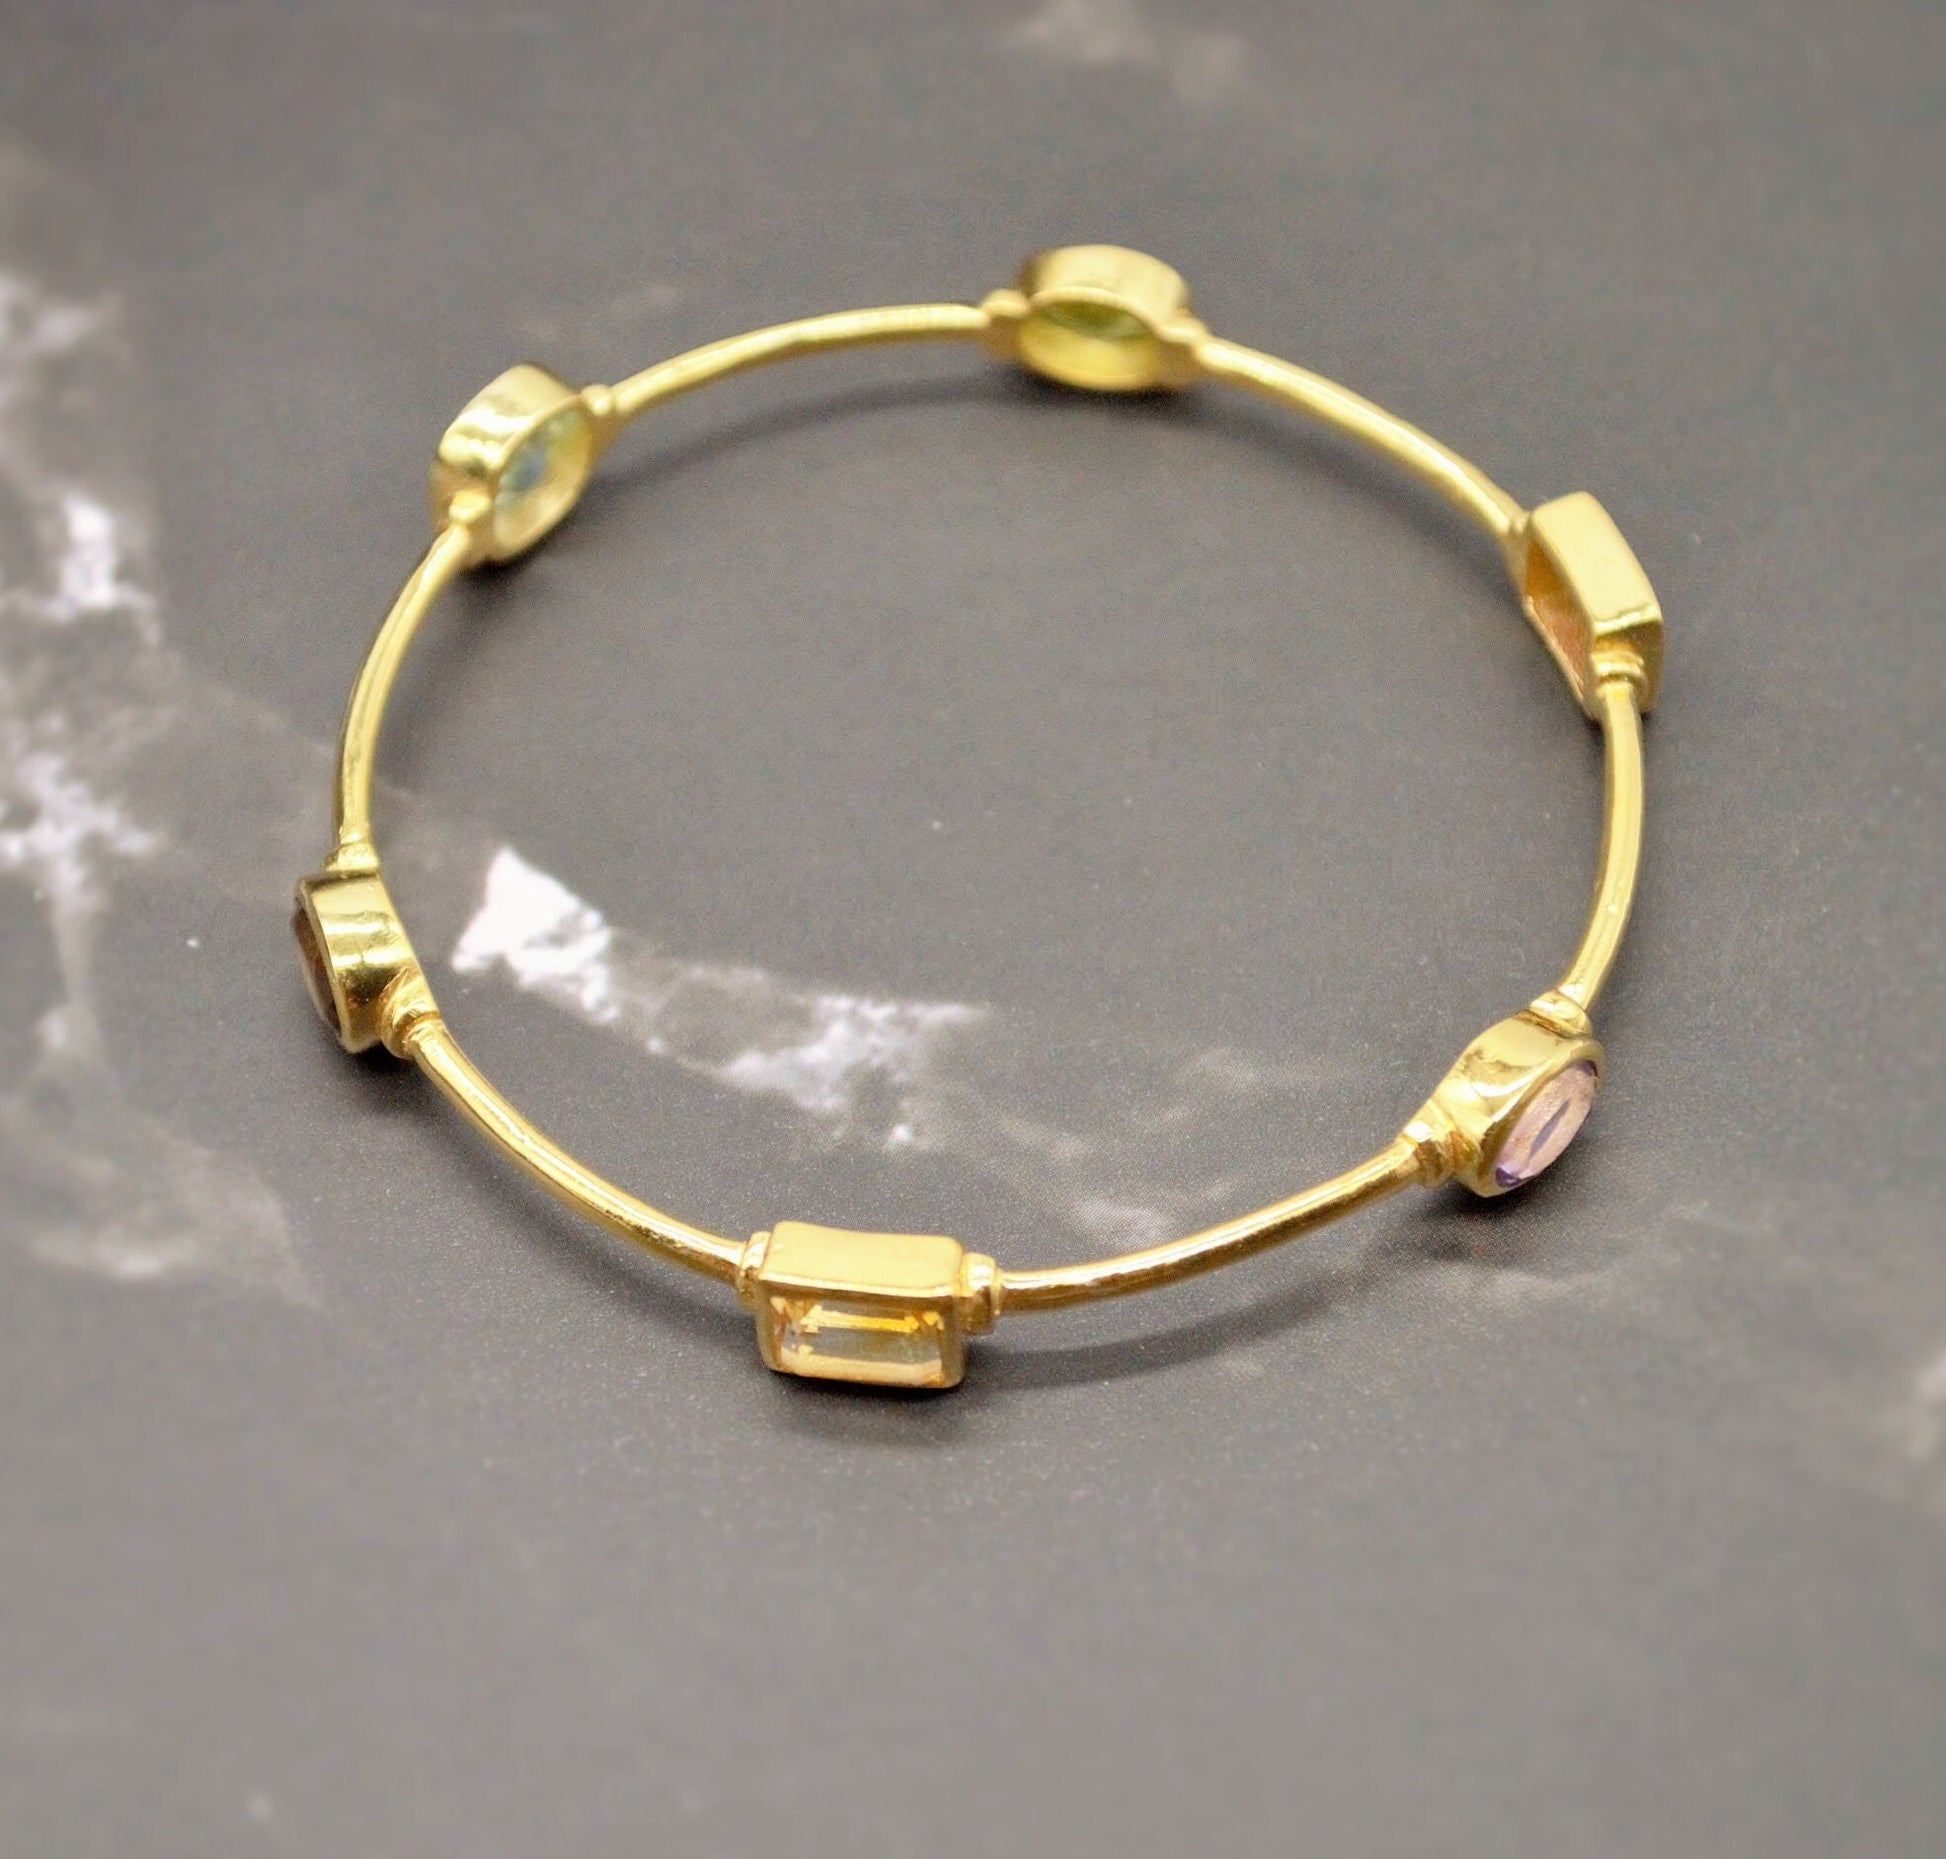 Multi Coloured Stone Gold Bangle, Blue Topaz, Amethyst, Citrine Bracelet, 6cm diameter, Gift For Her, Sterling Silver Birthstone Bracelet